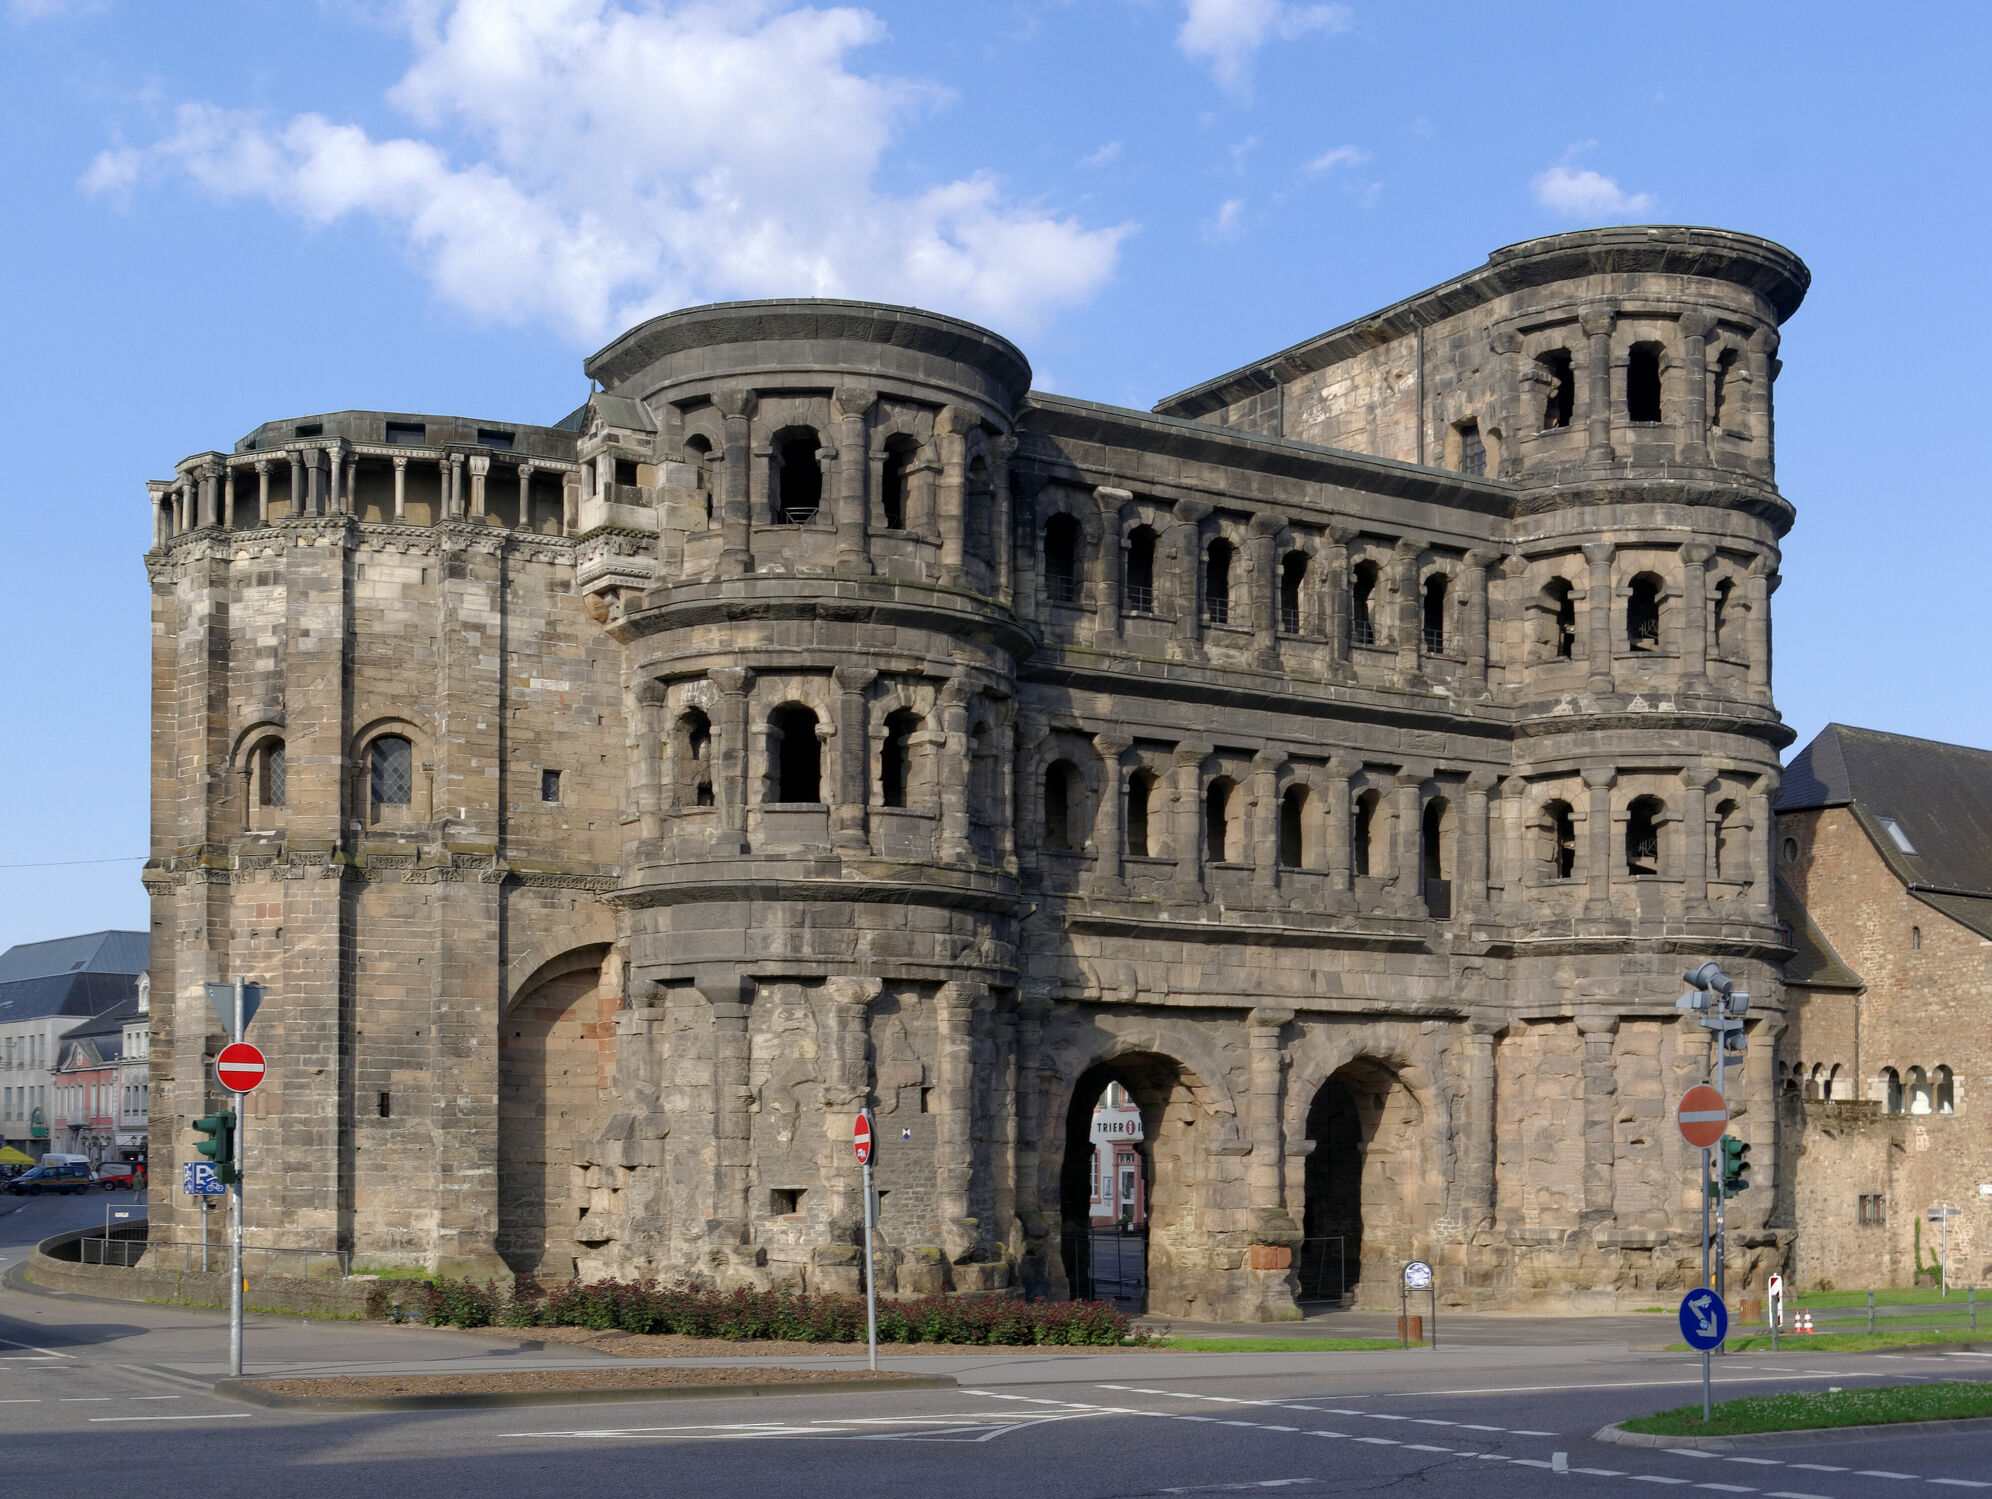 Bild mit Deutschland, bauwerk, Trier, berühmtes Bauwerk, porta nigra, römisch, römisches Bauwerk, Antike, Römisches Reich